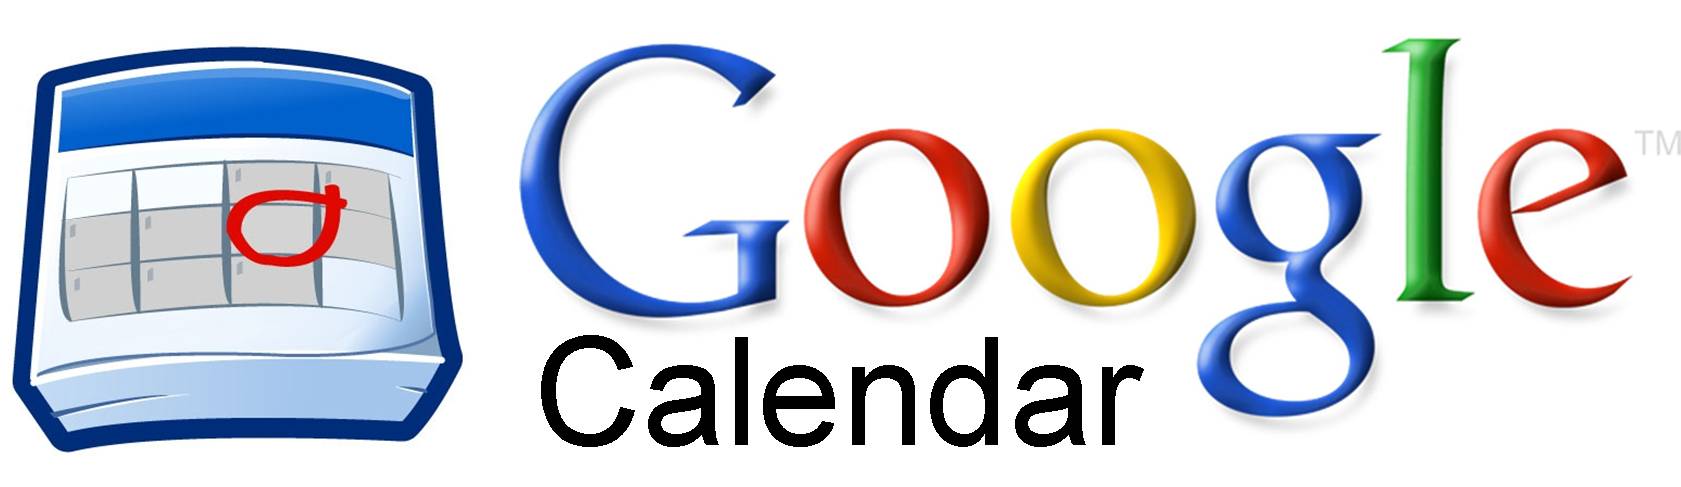 Собираем свой аналог Google Calendar не в 30 строк